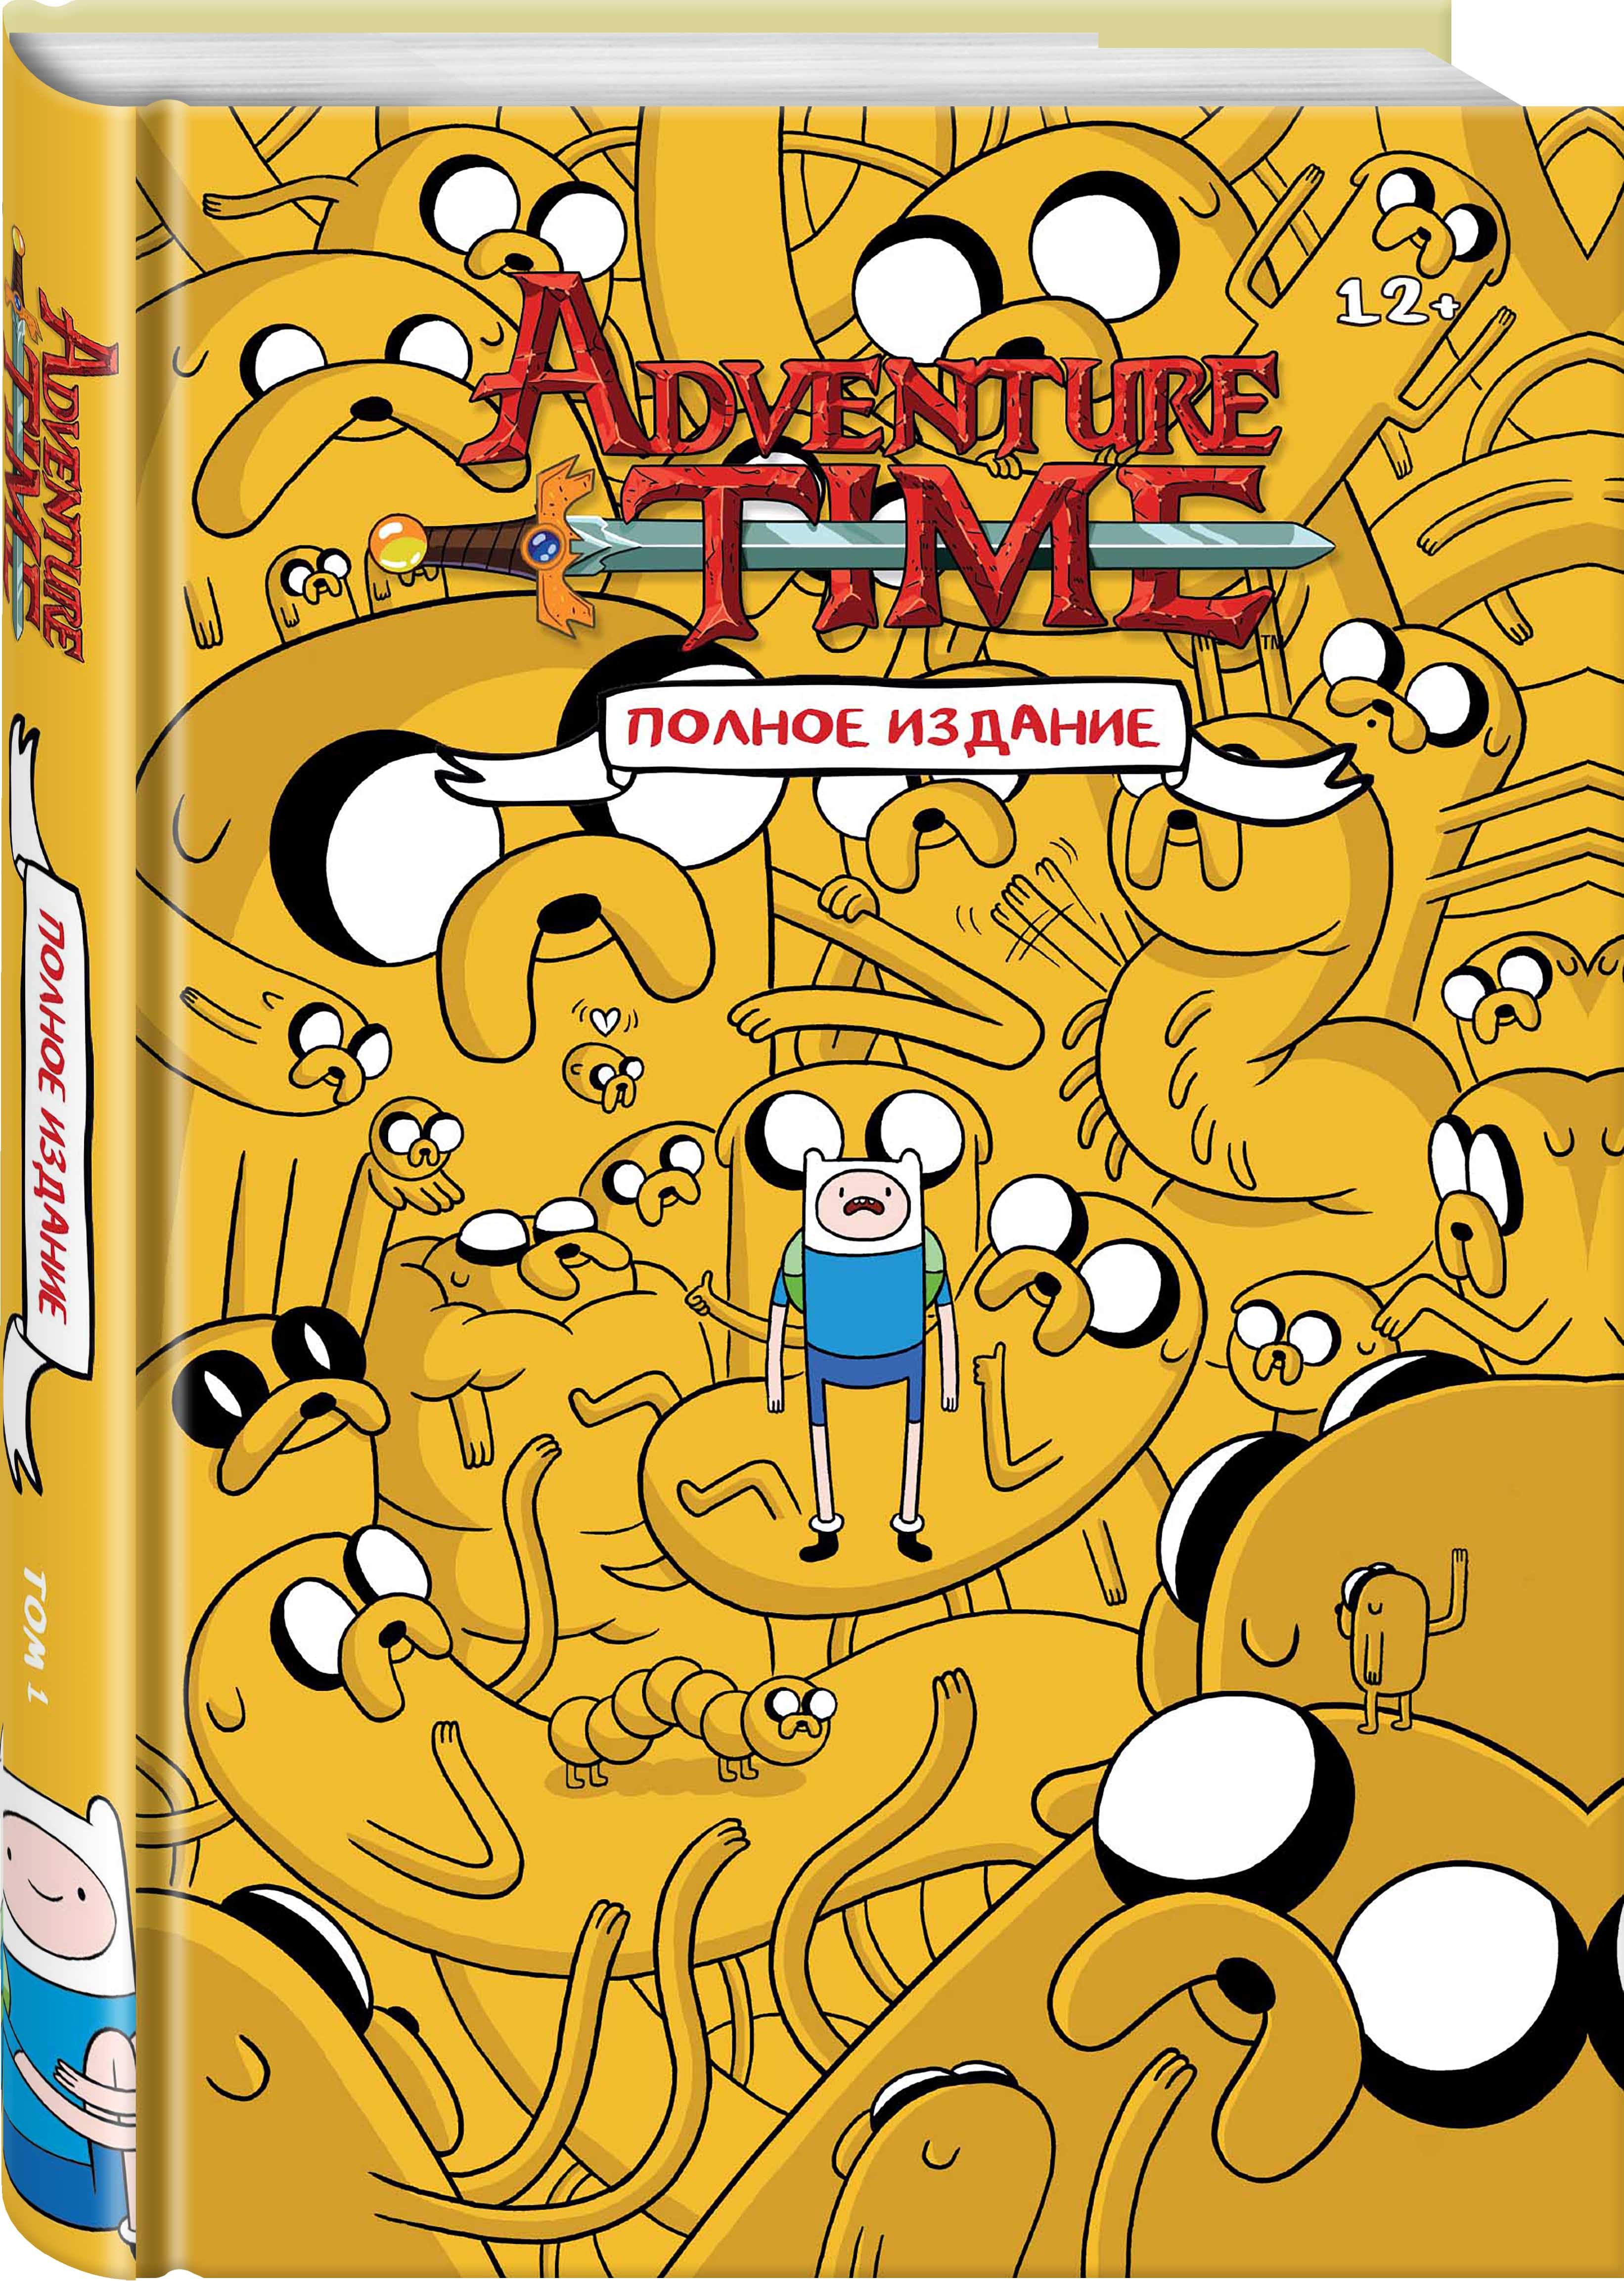 Время приключений том 1. Adventure time полное издание. Книга Adventure time полное издание. Время приключений полное издание том 1.